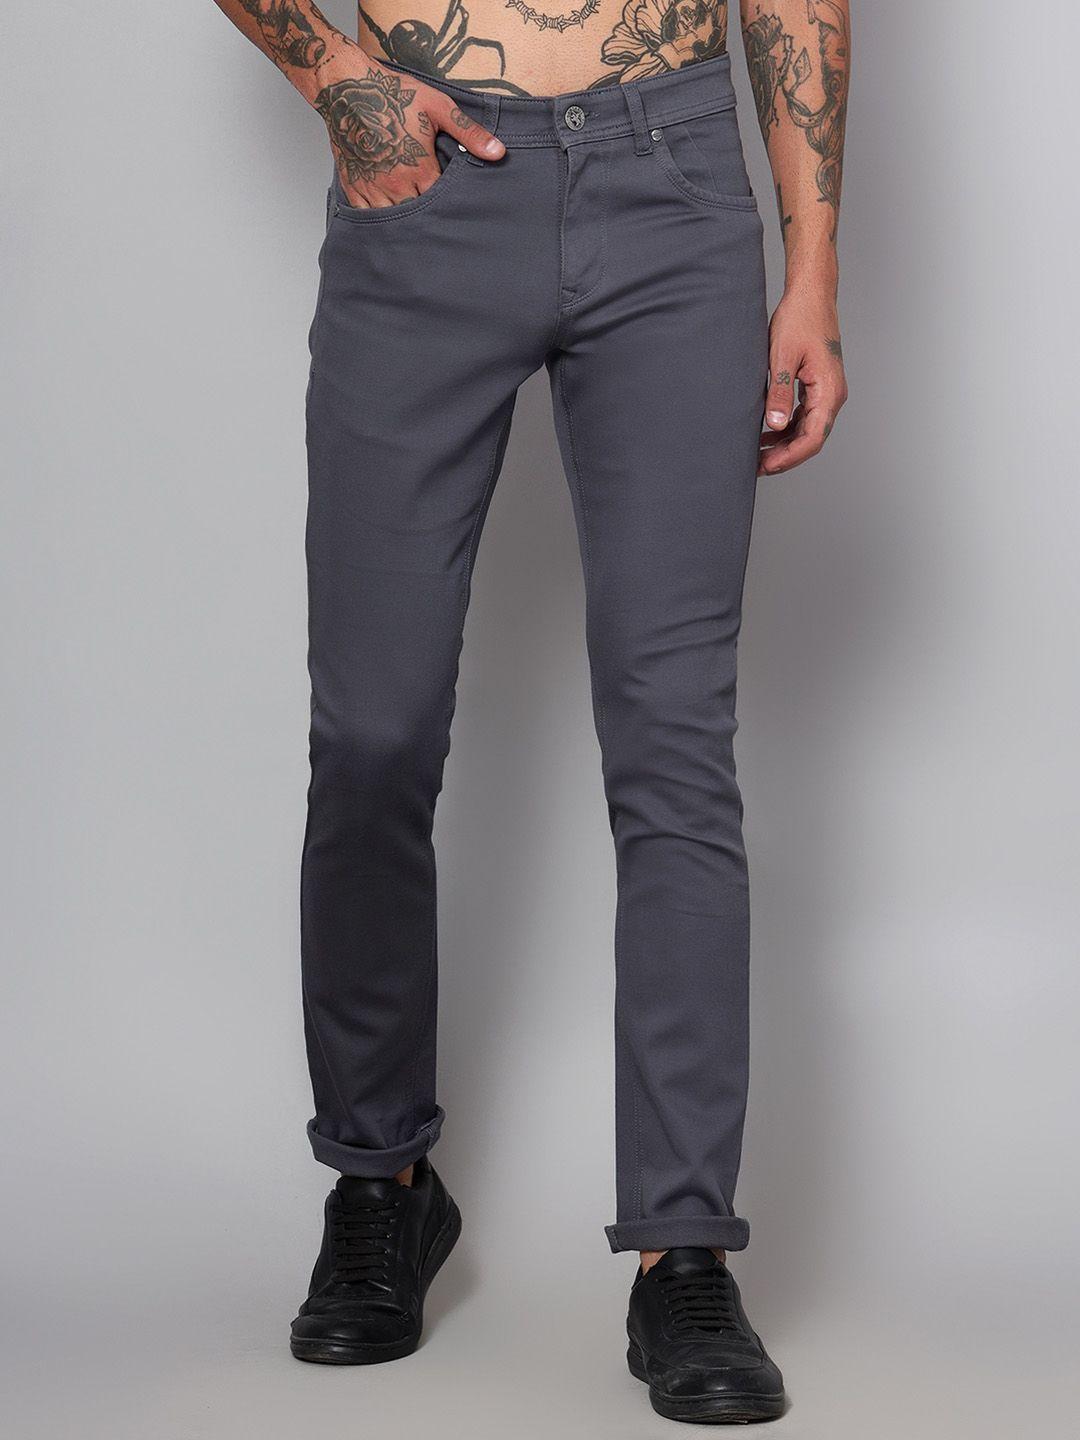 cantabil men grey comfort trousers